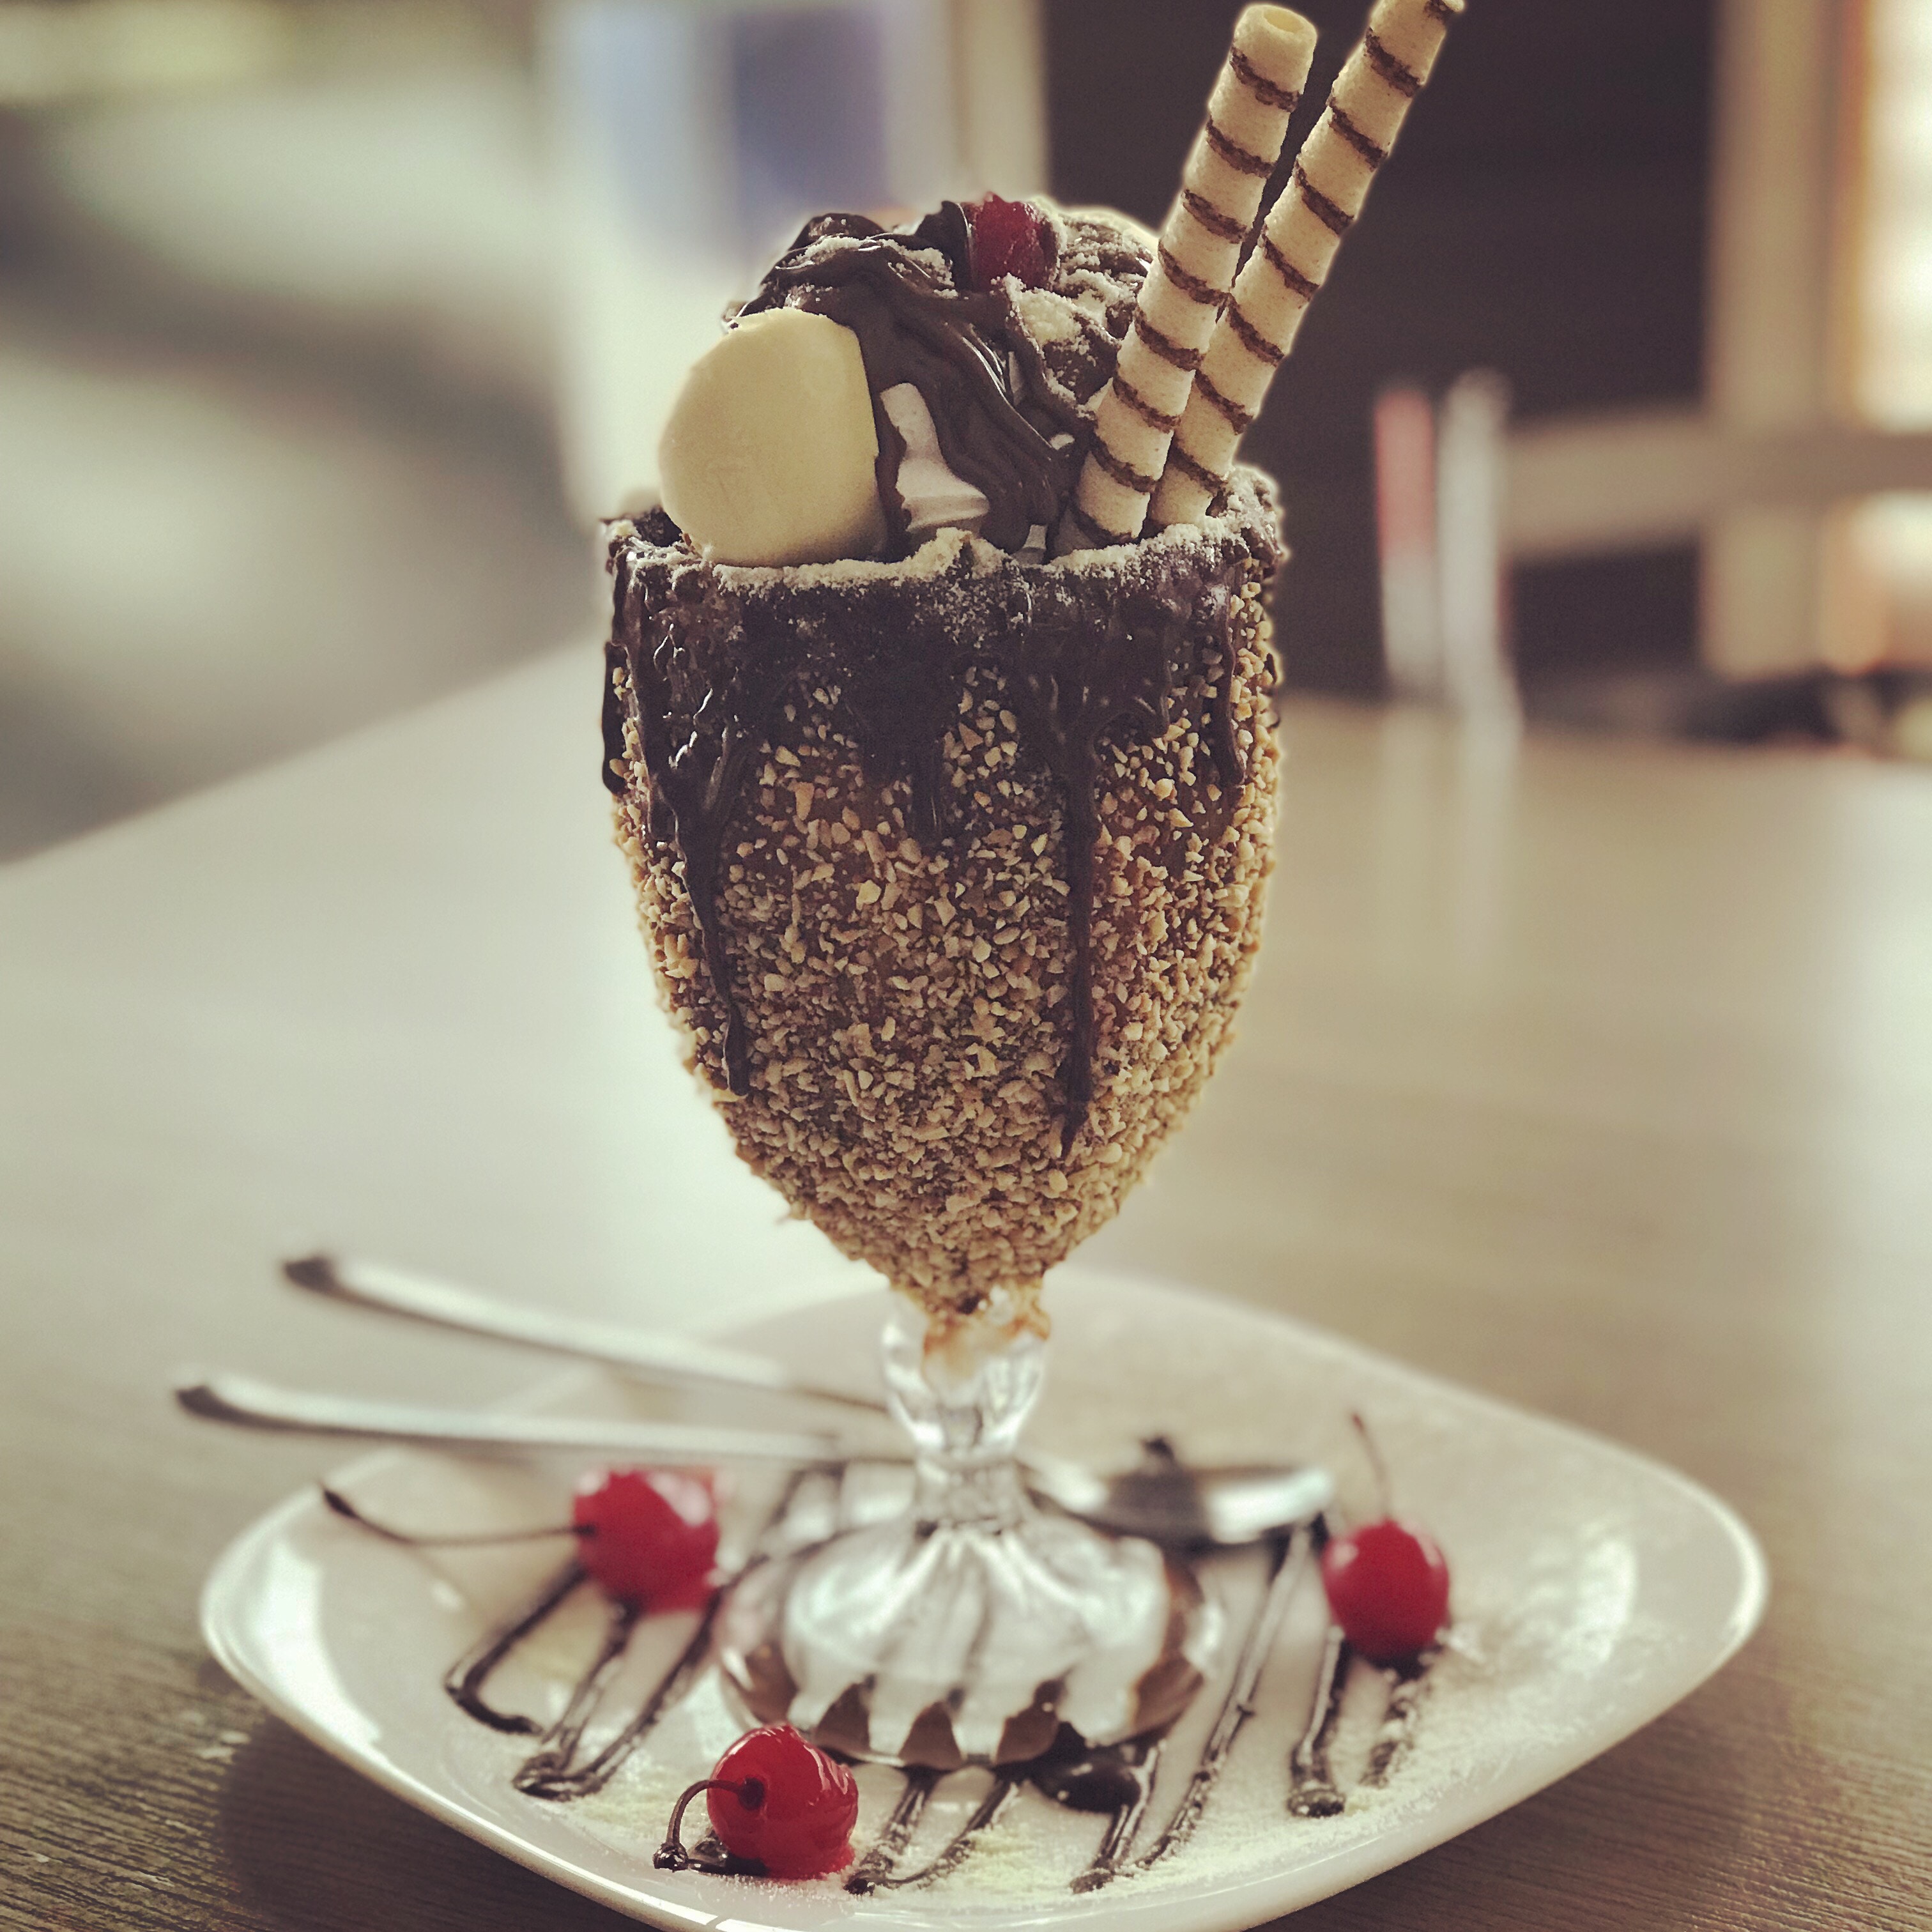 Vanilla ice cream sundae with chocolate sauce, two wafers and cherries